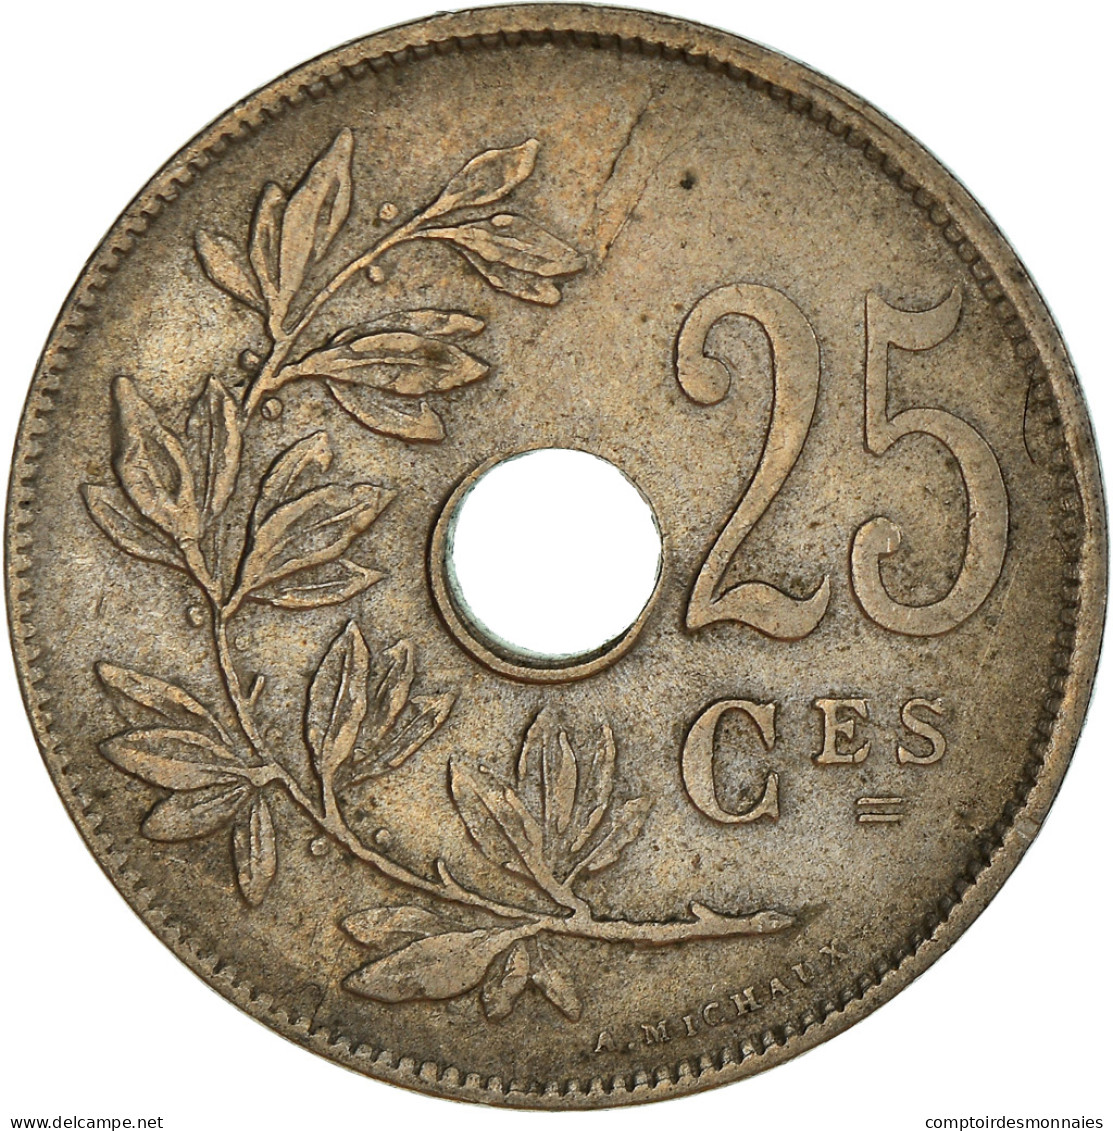 Monnaie, Belgique, 25 Centimes, 1929, TTB+, Cupro-nickel, KM:68.1 - 25 Centimes